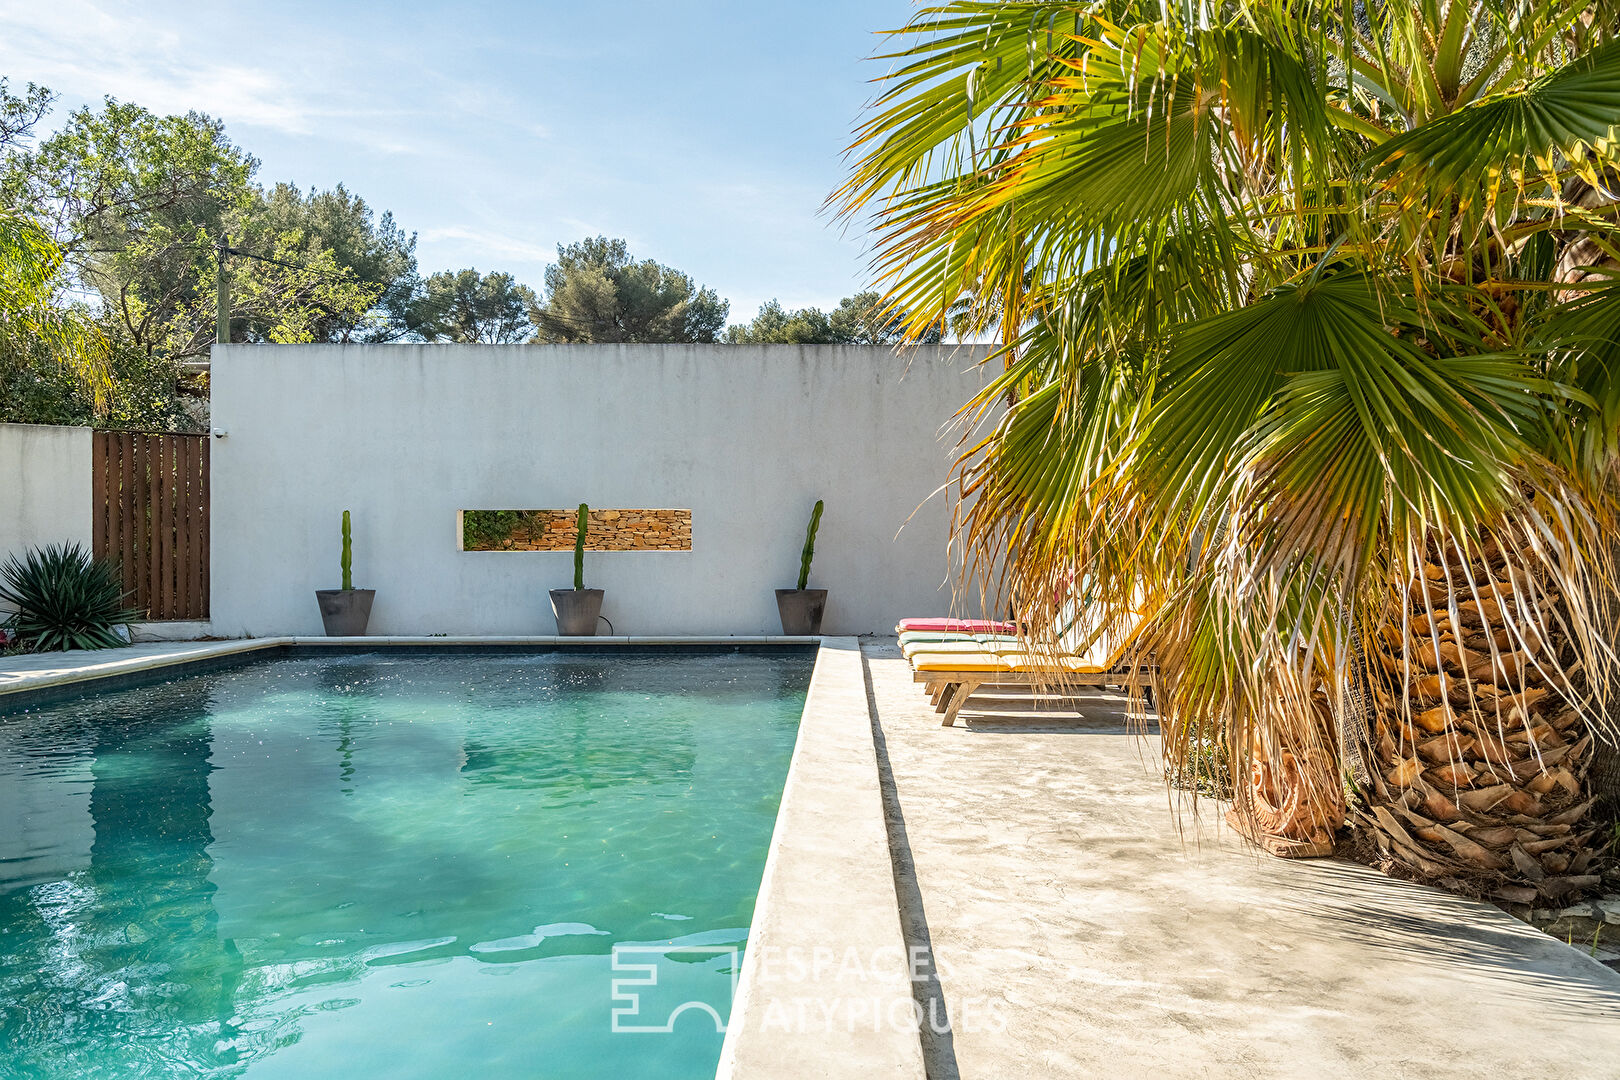 Maison californienne Polpo avec piscine